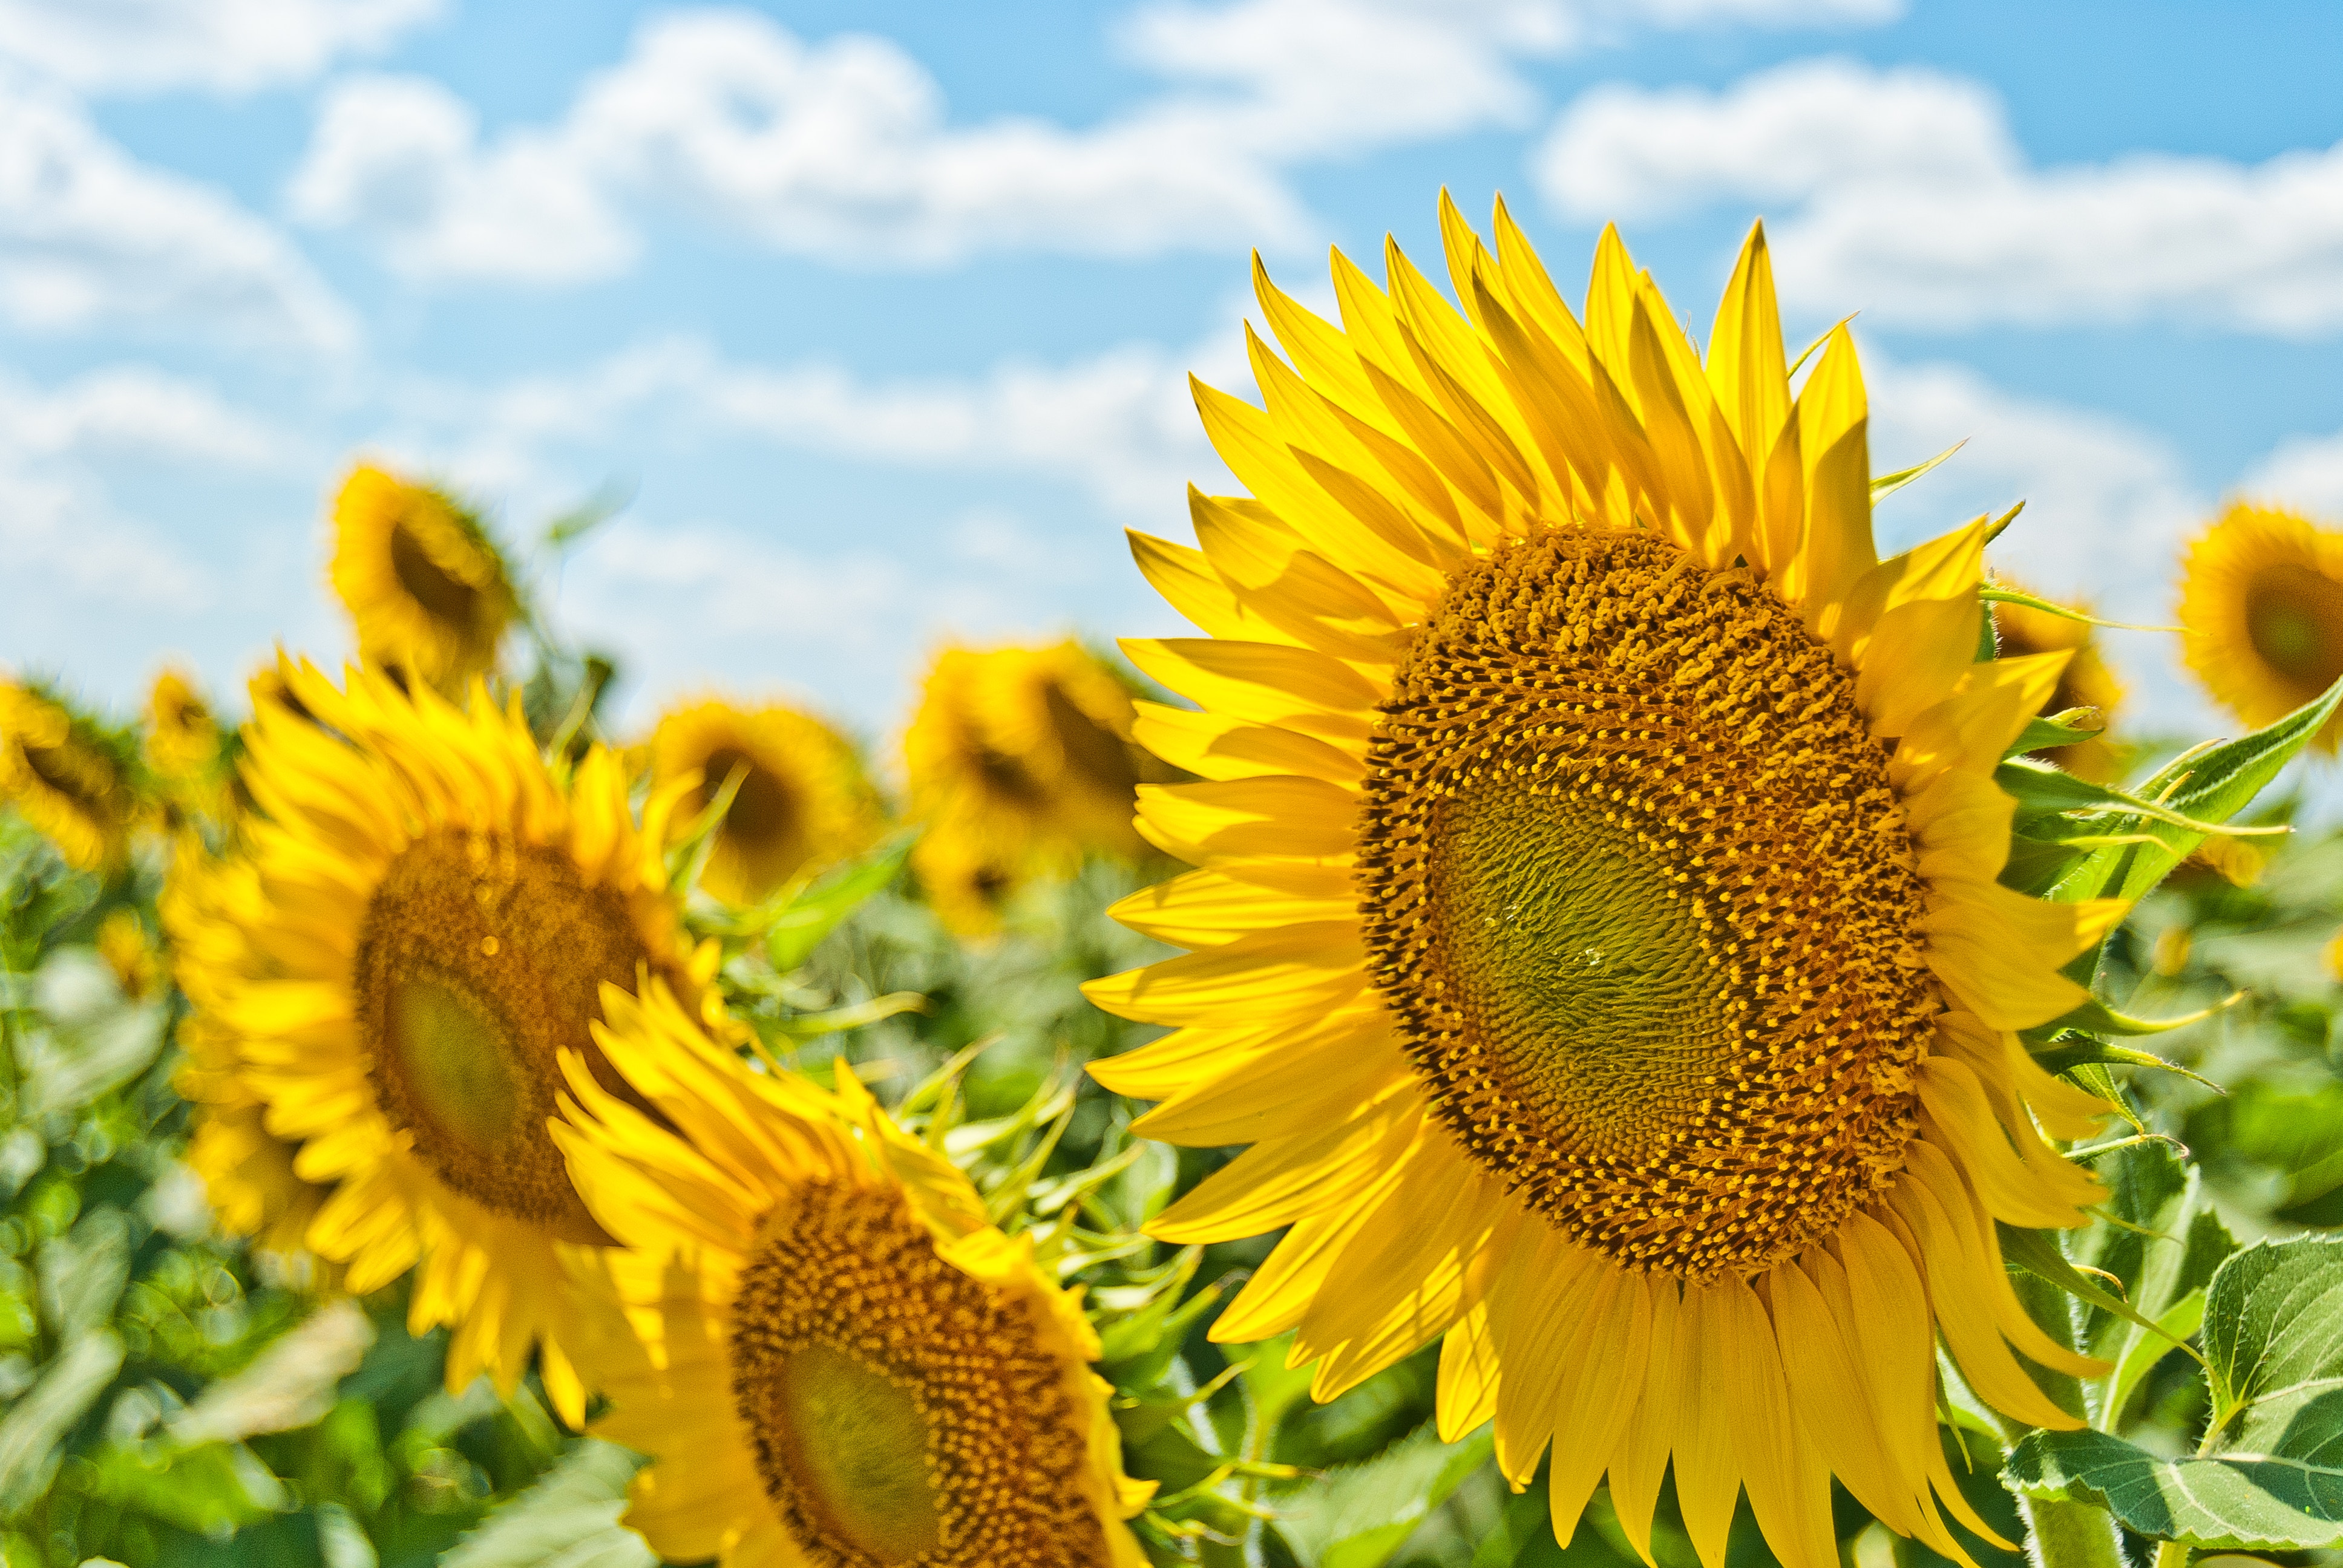 sunflower in a field in summer